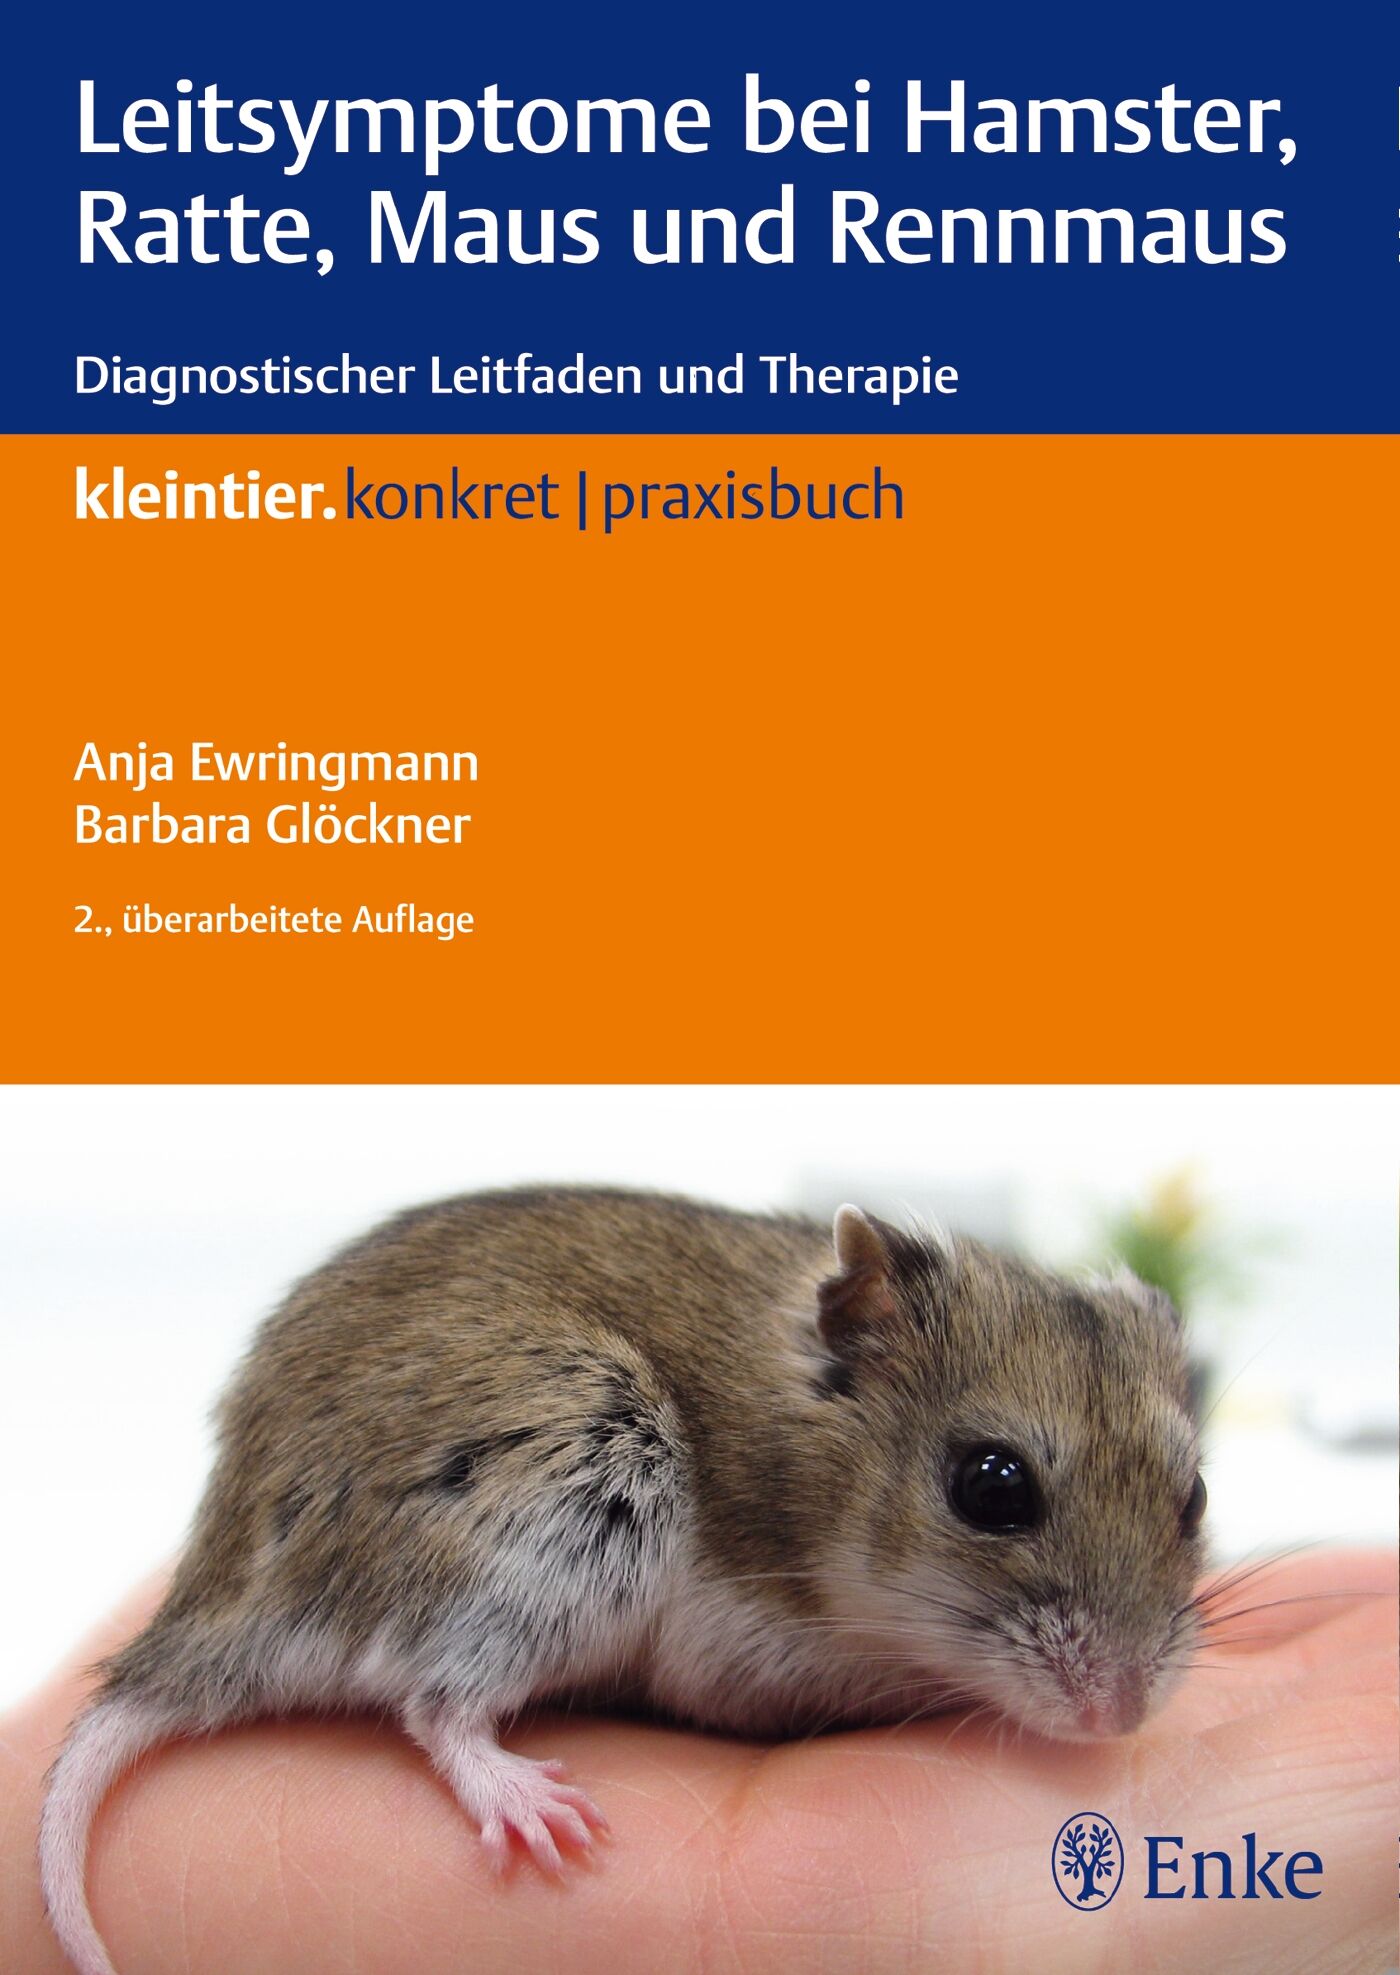 Leitsymptome bei Hamster, Ratte, Maus und Rennmaus, 9783830411659